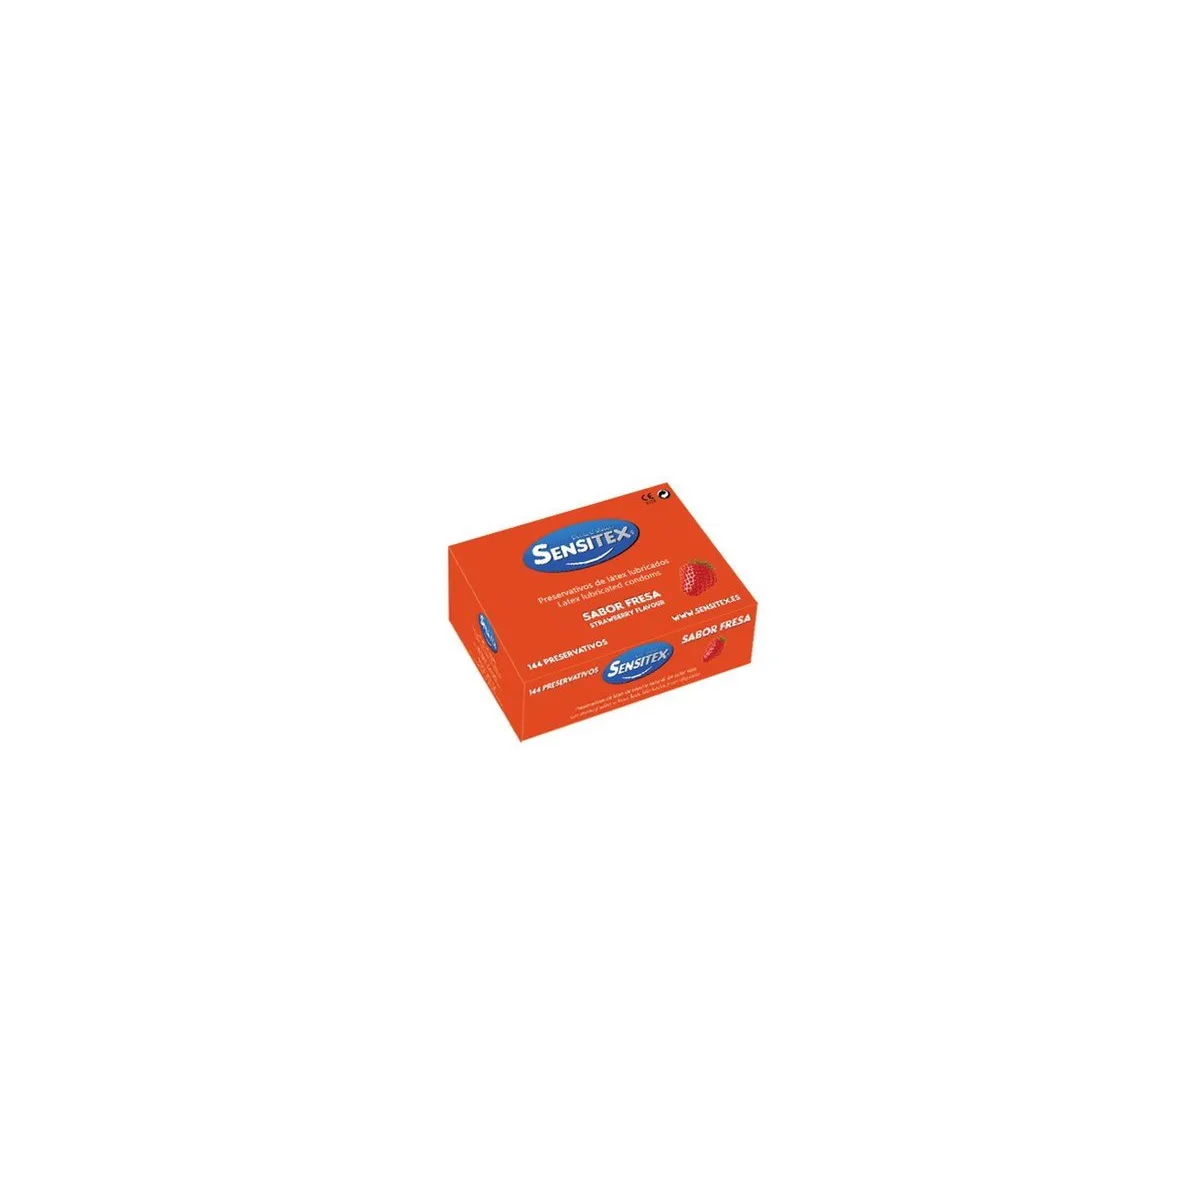 Sensitex strawberry condoms (per unit)